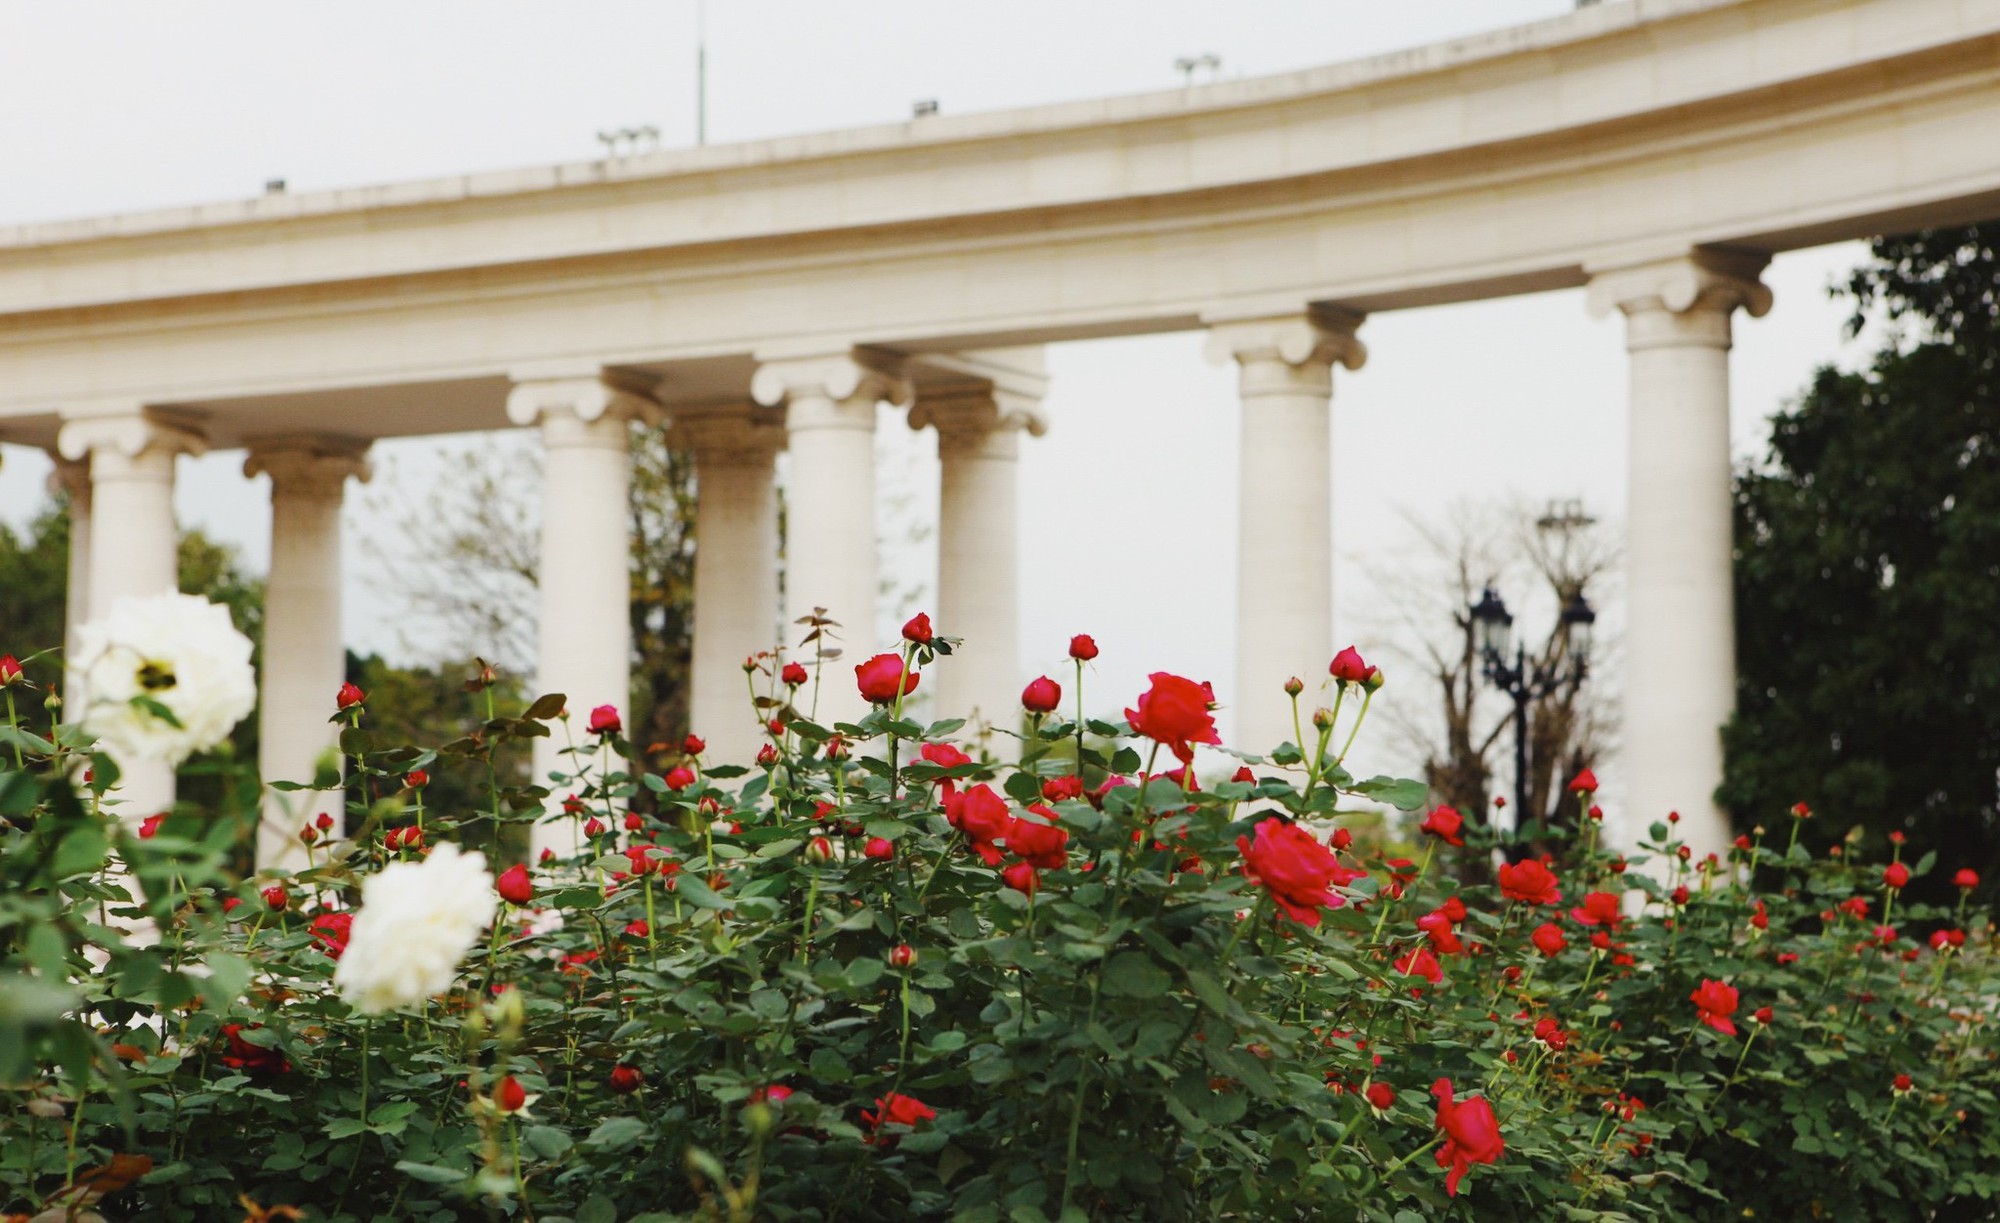 Trường đại học gây sốt với vườn hồng hàng trăm loại đẹp như cổ tích: Chỉ ngắm thôi cũng đã đầy cảm hứng học tập- Ảnh 9.